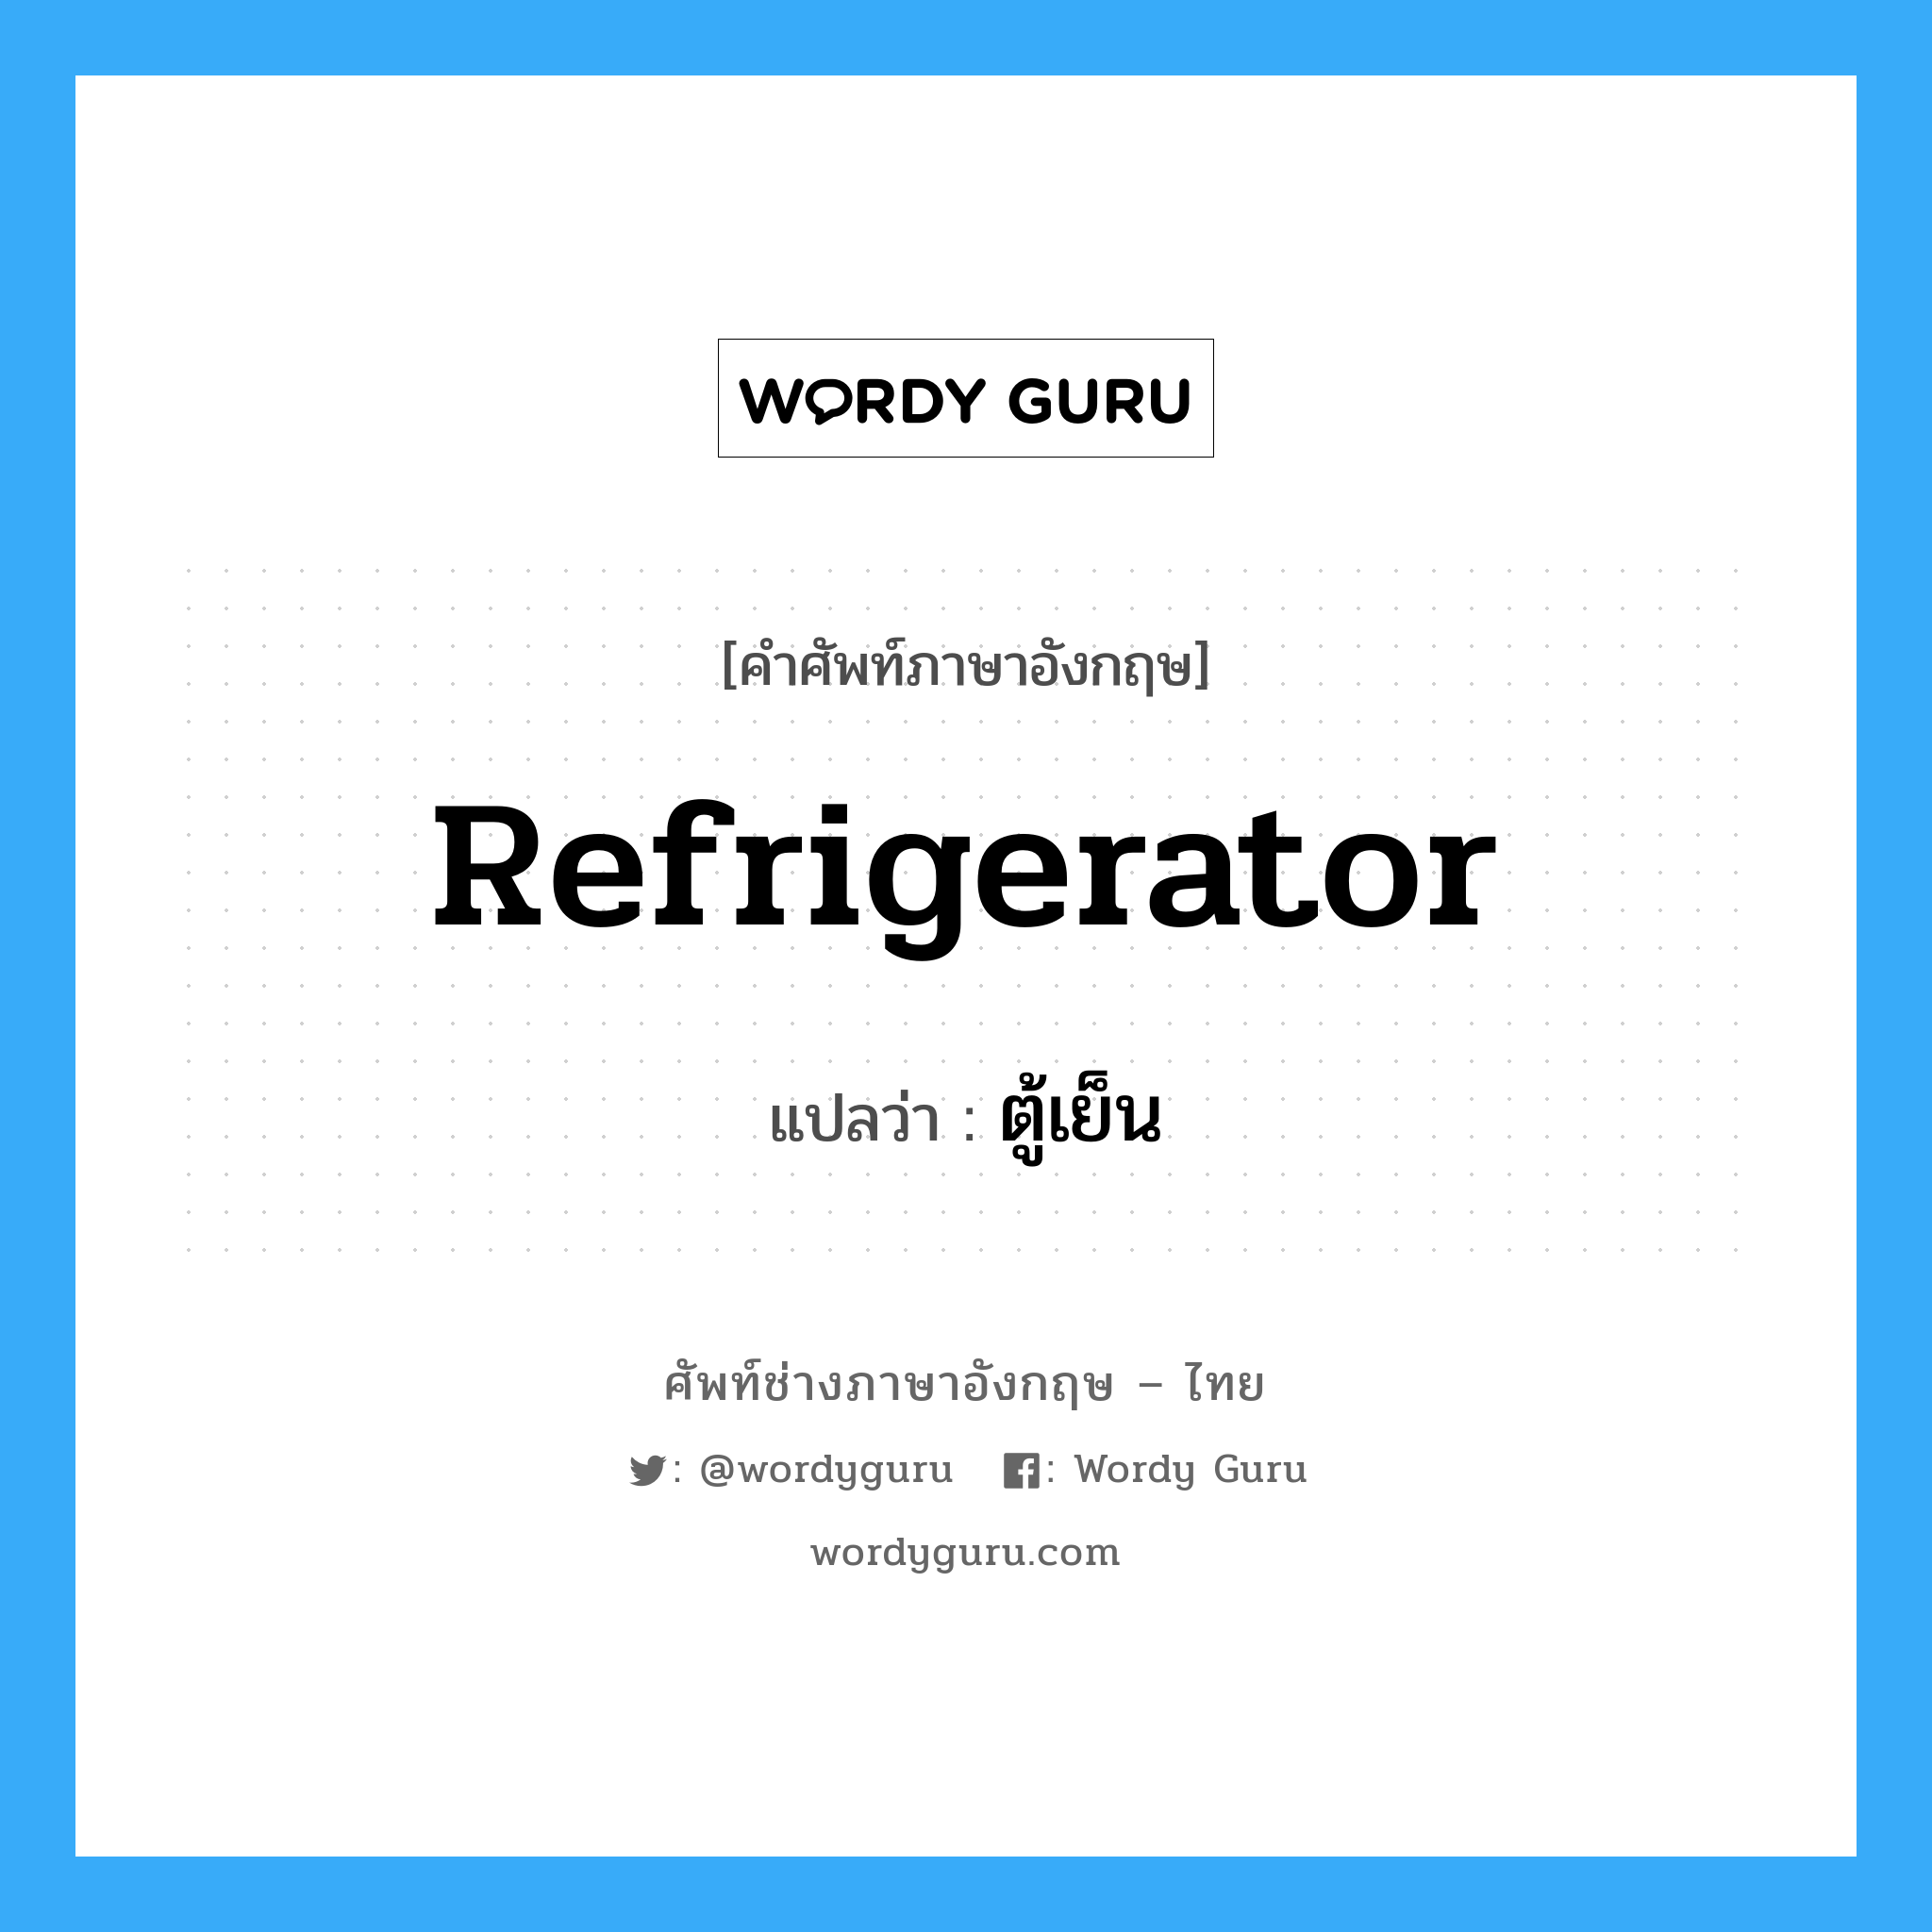 ตู้เย็น ภาษาอังกฤษ?, คำศัพท์ช่างภาษาอังกฤษ - ไทย ตู้เย็น คำศัพท์ภาษาอังกฤษ ตู้เย็น แปลว่า refrigerator